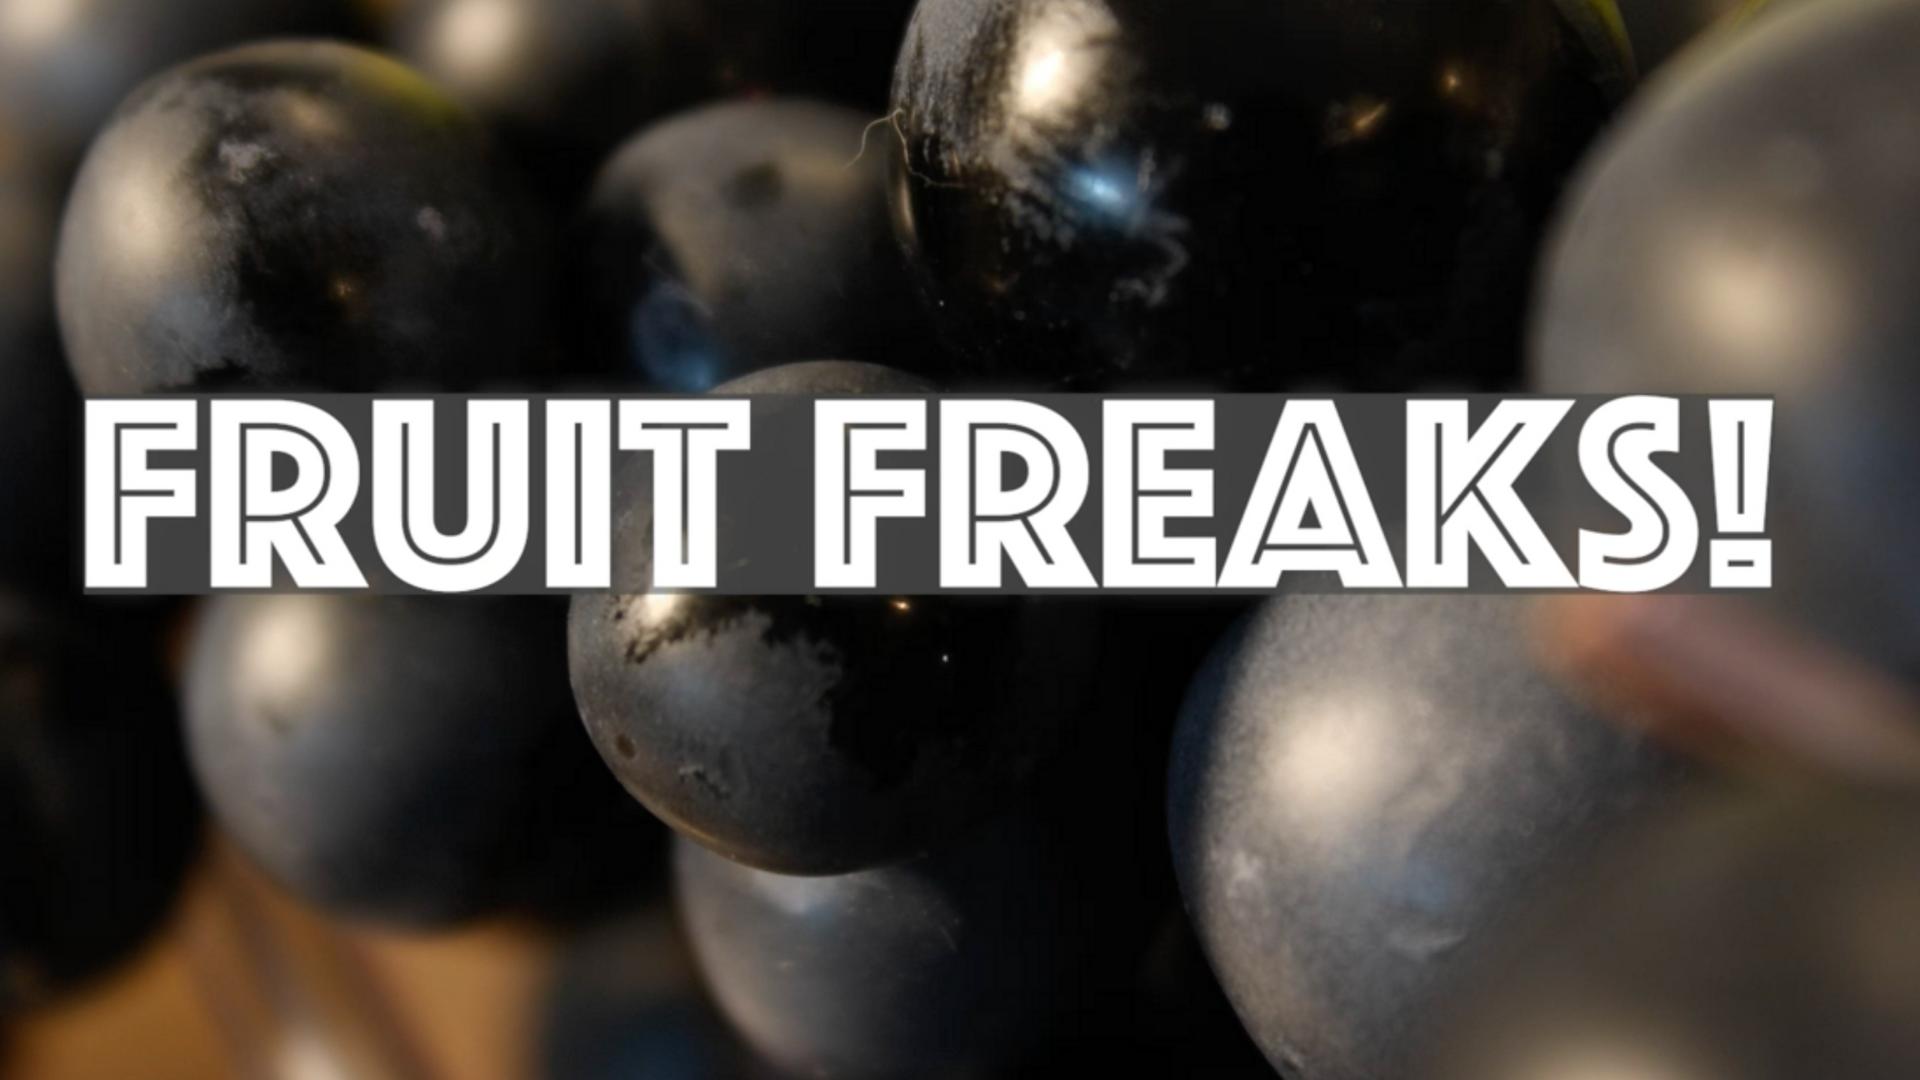 Fruit Freaks!